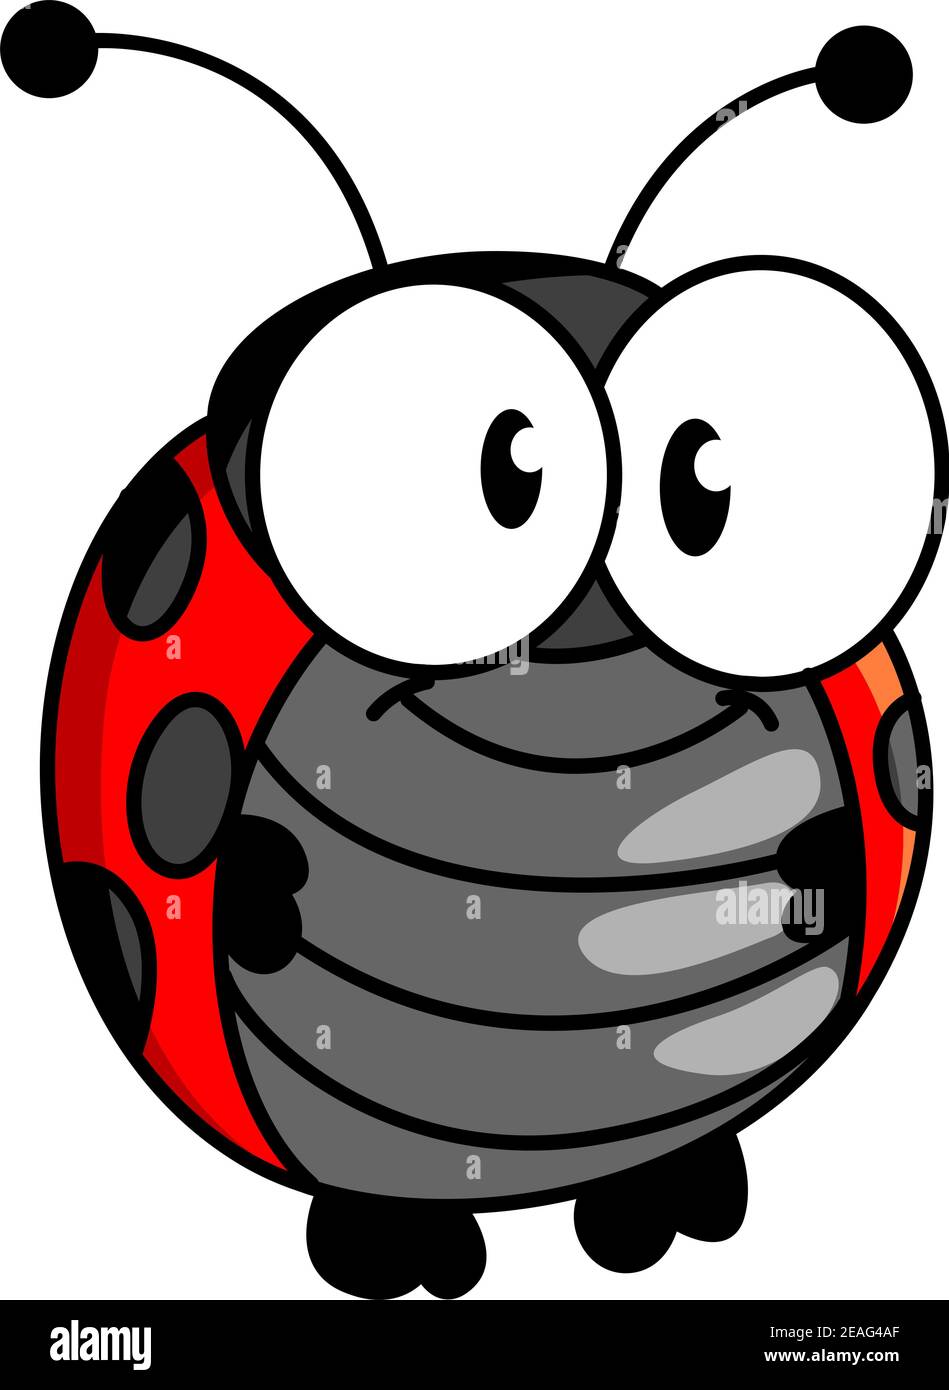 Rosso e nero macchiato sorridendo felice piccolo ladybug o ladybird in stile cartone animato in posizione verticale con grandi occhi rotondi sopra bianco Illustrazione Vettoriale